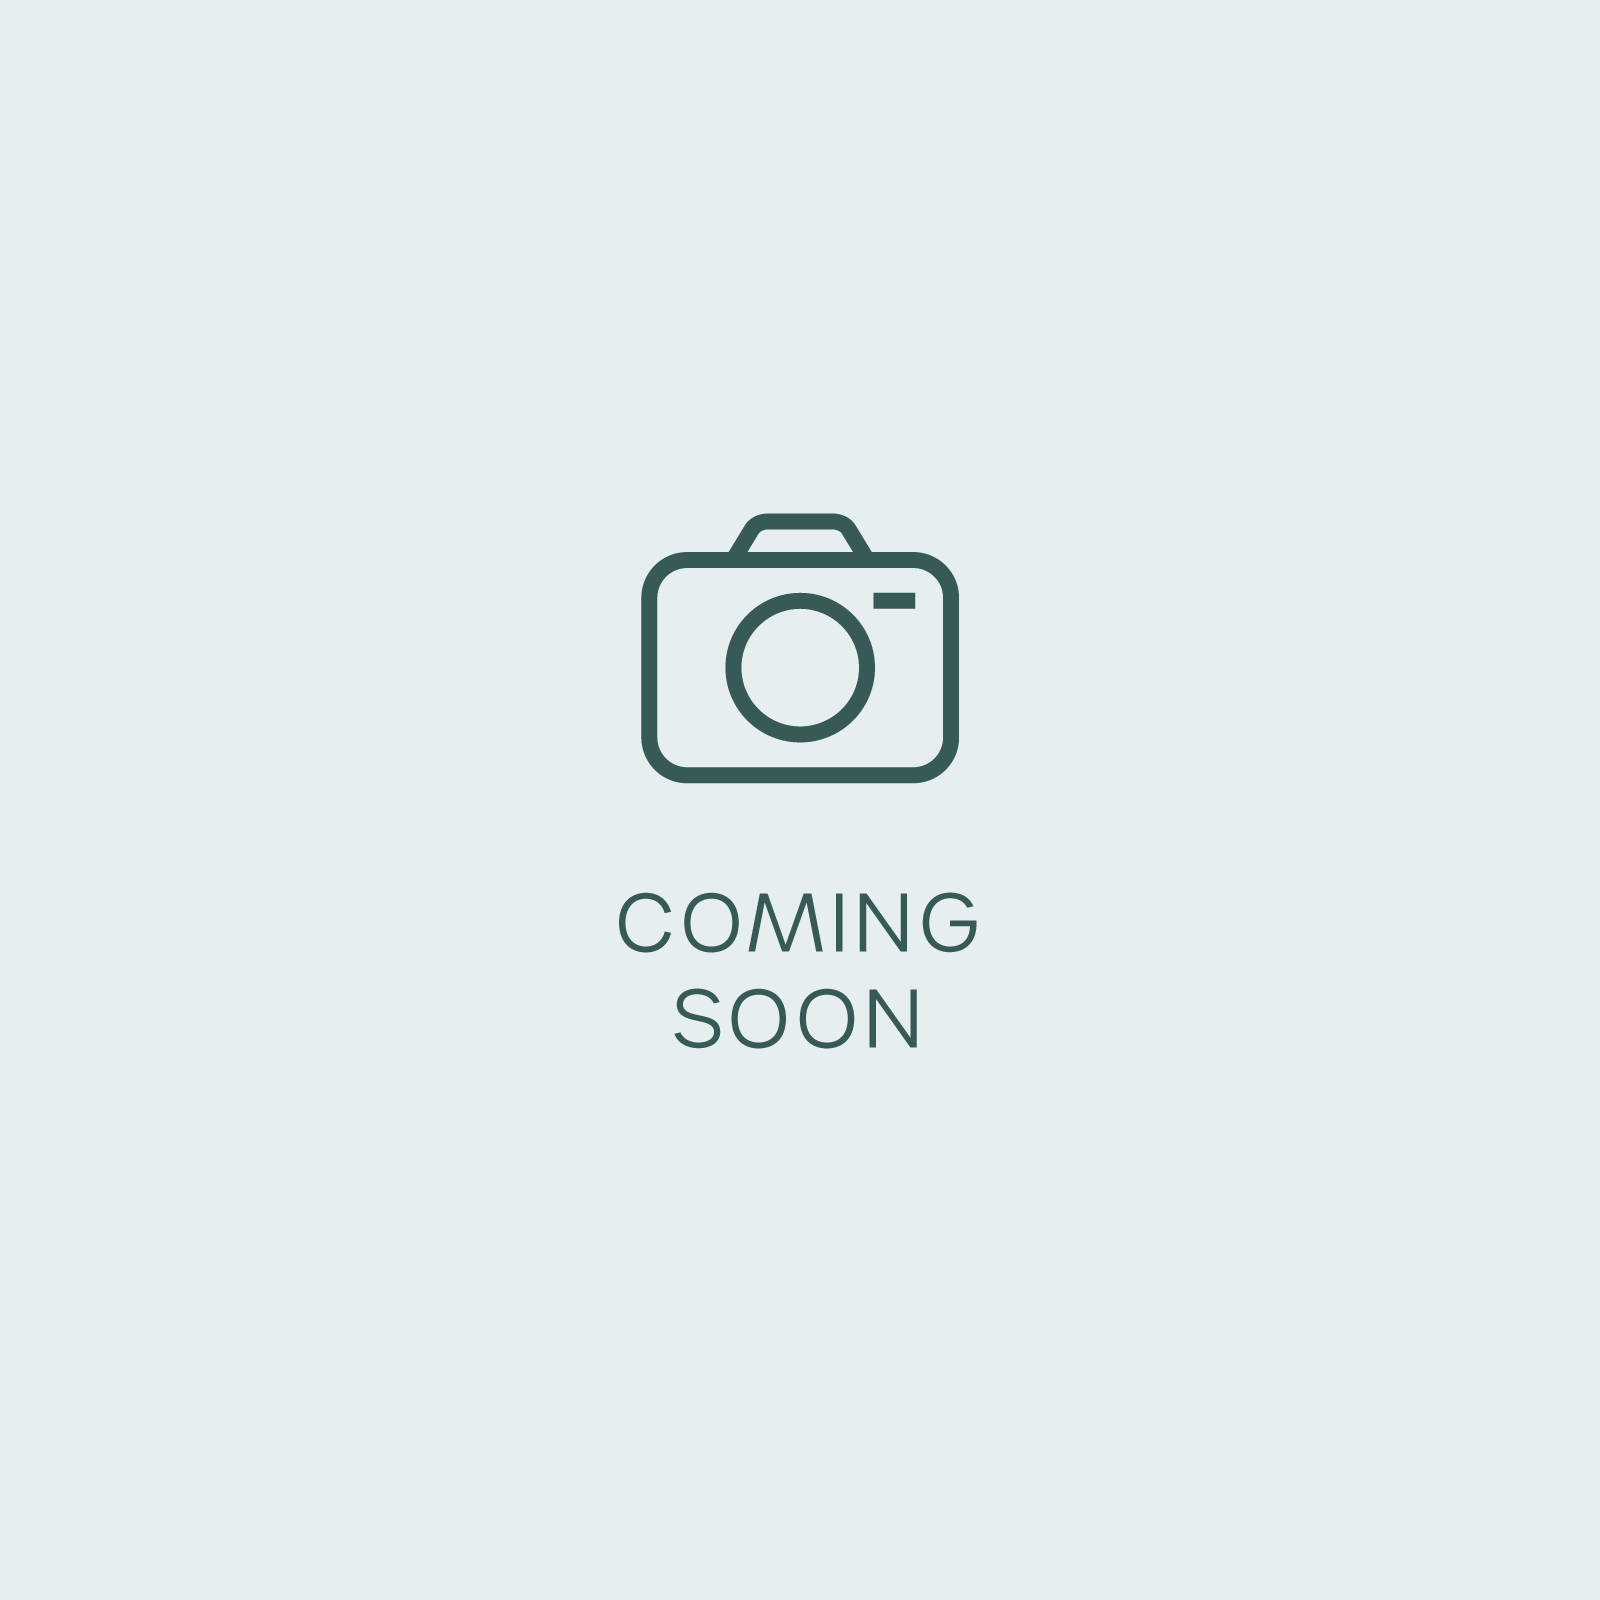 DocBlock Anthurium Zara '27' x Michelle '1' (Coming Soon)